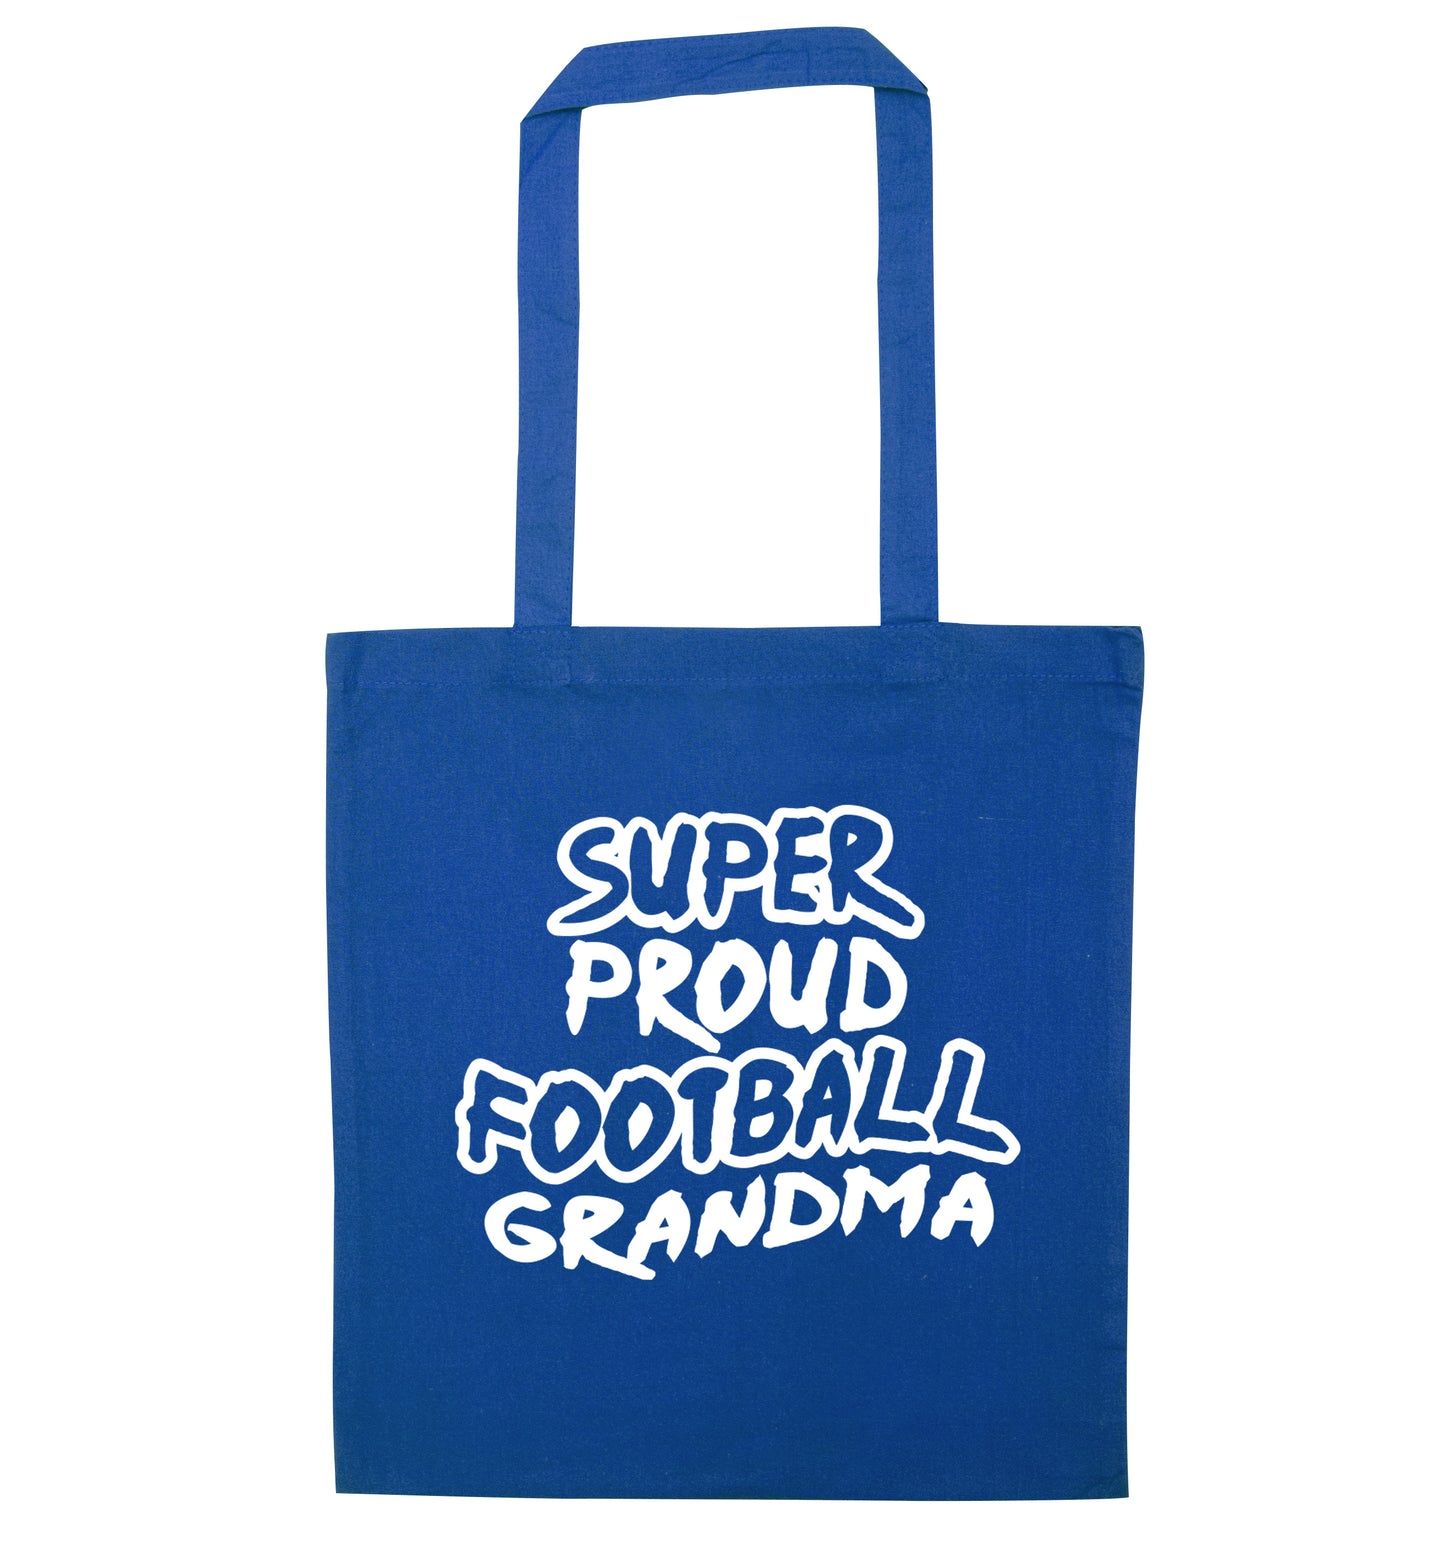 Super proud football grandma blue tote bag